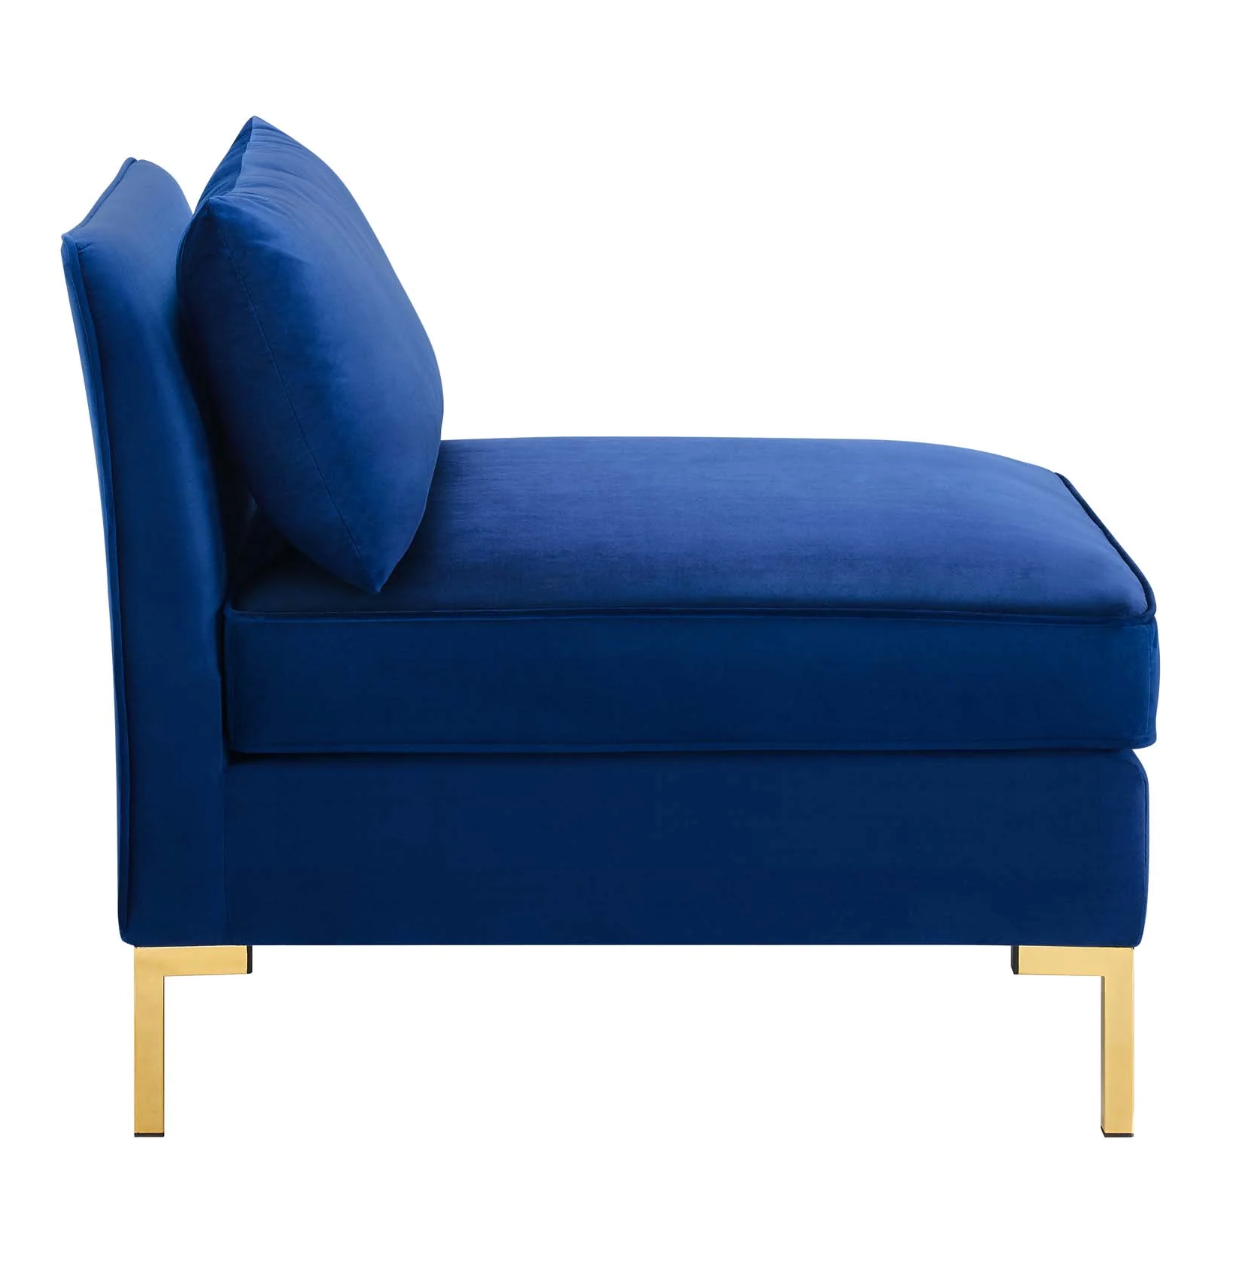 Dark Blue Velvet Armless Chair Piece for Sectional Sofa